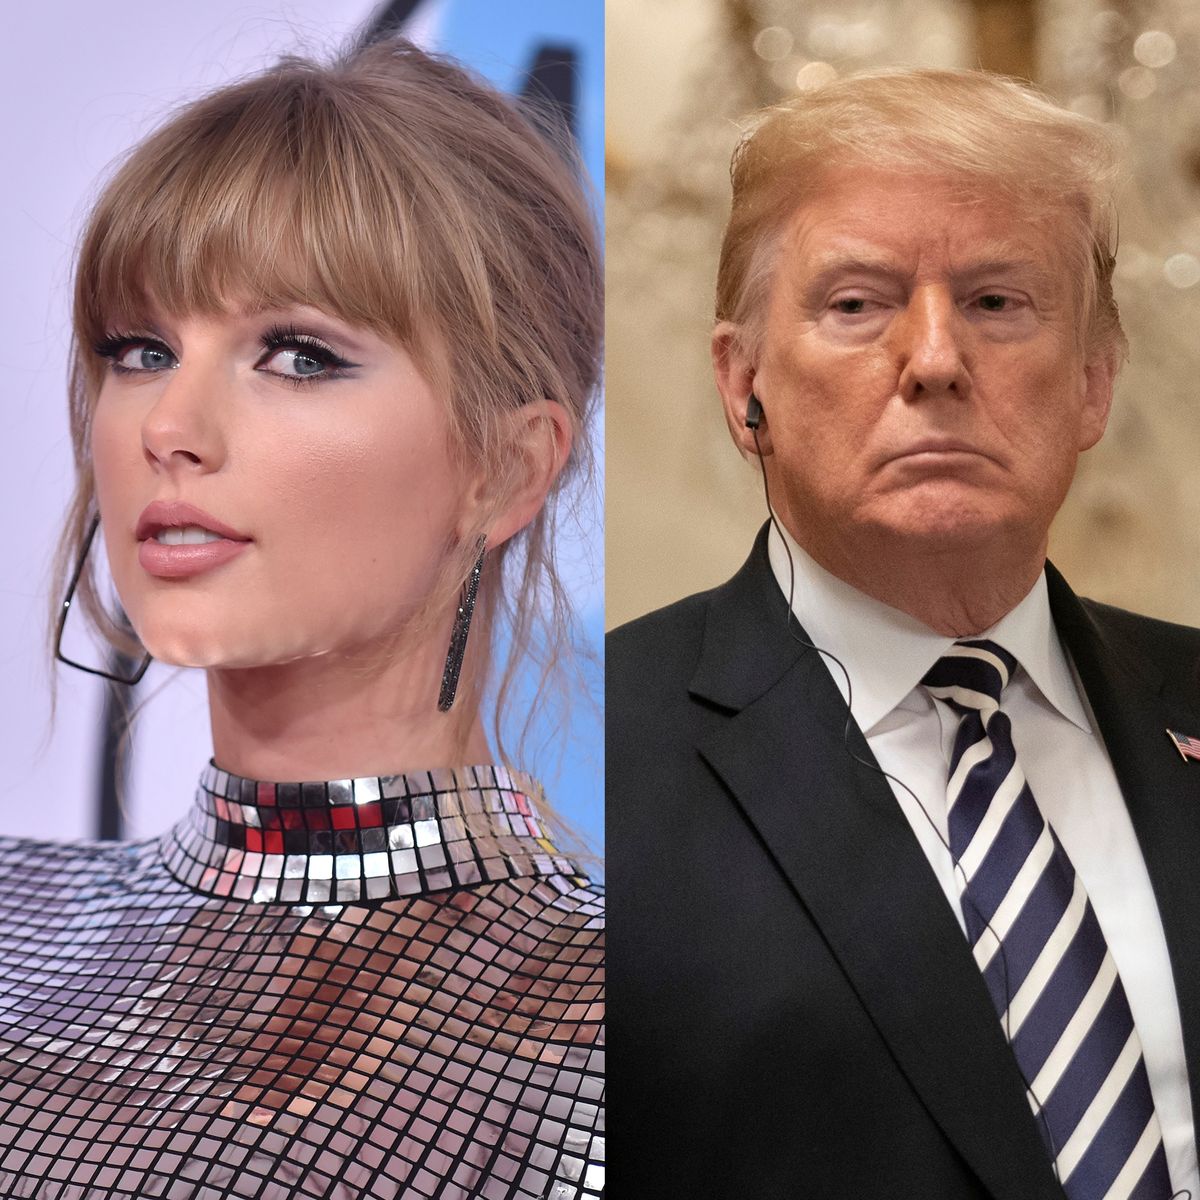 Taylor vs Trump. Kto ma większą władzę, celebryci czy politycy?